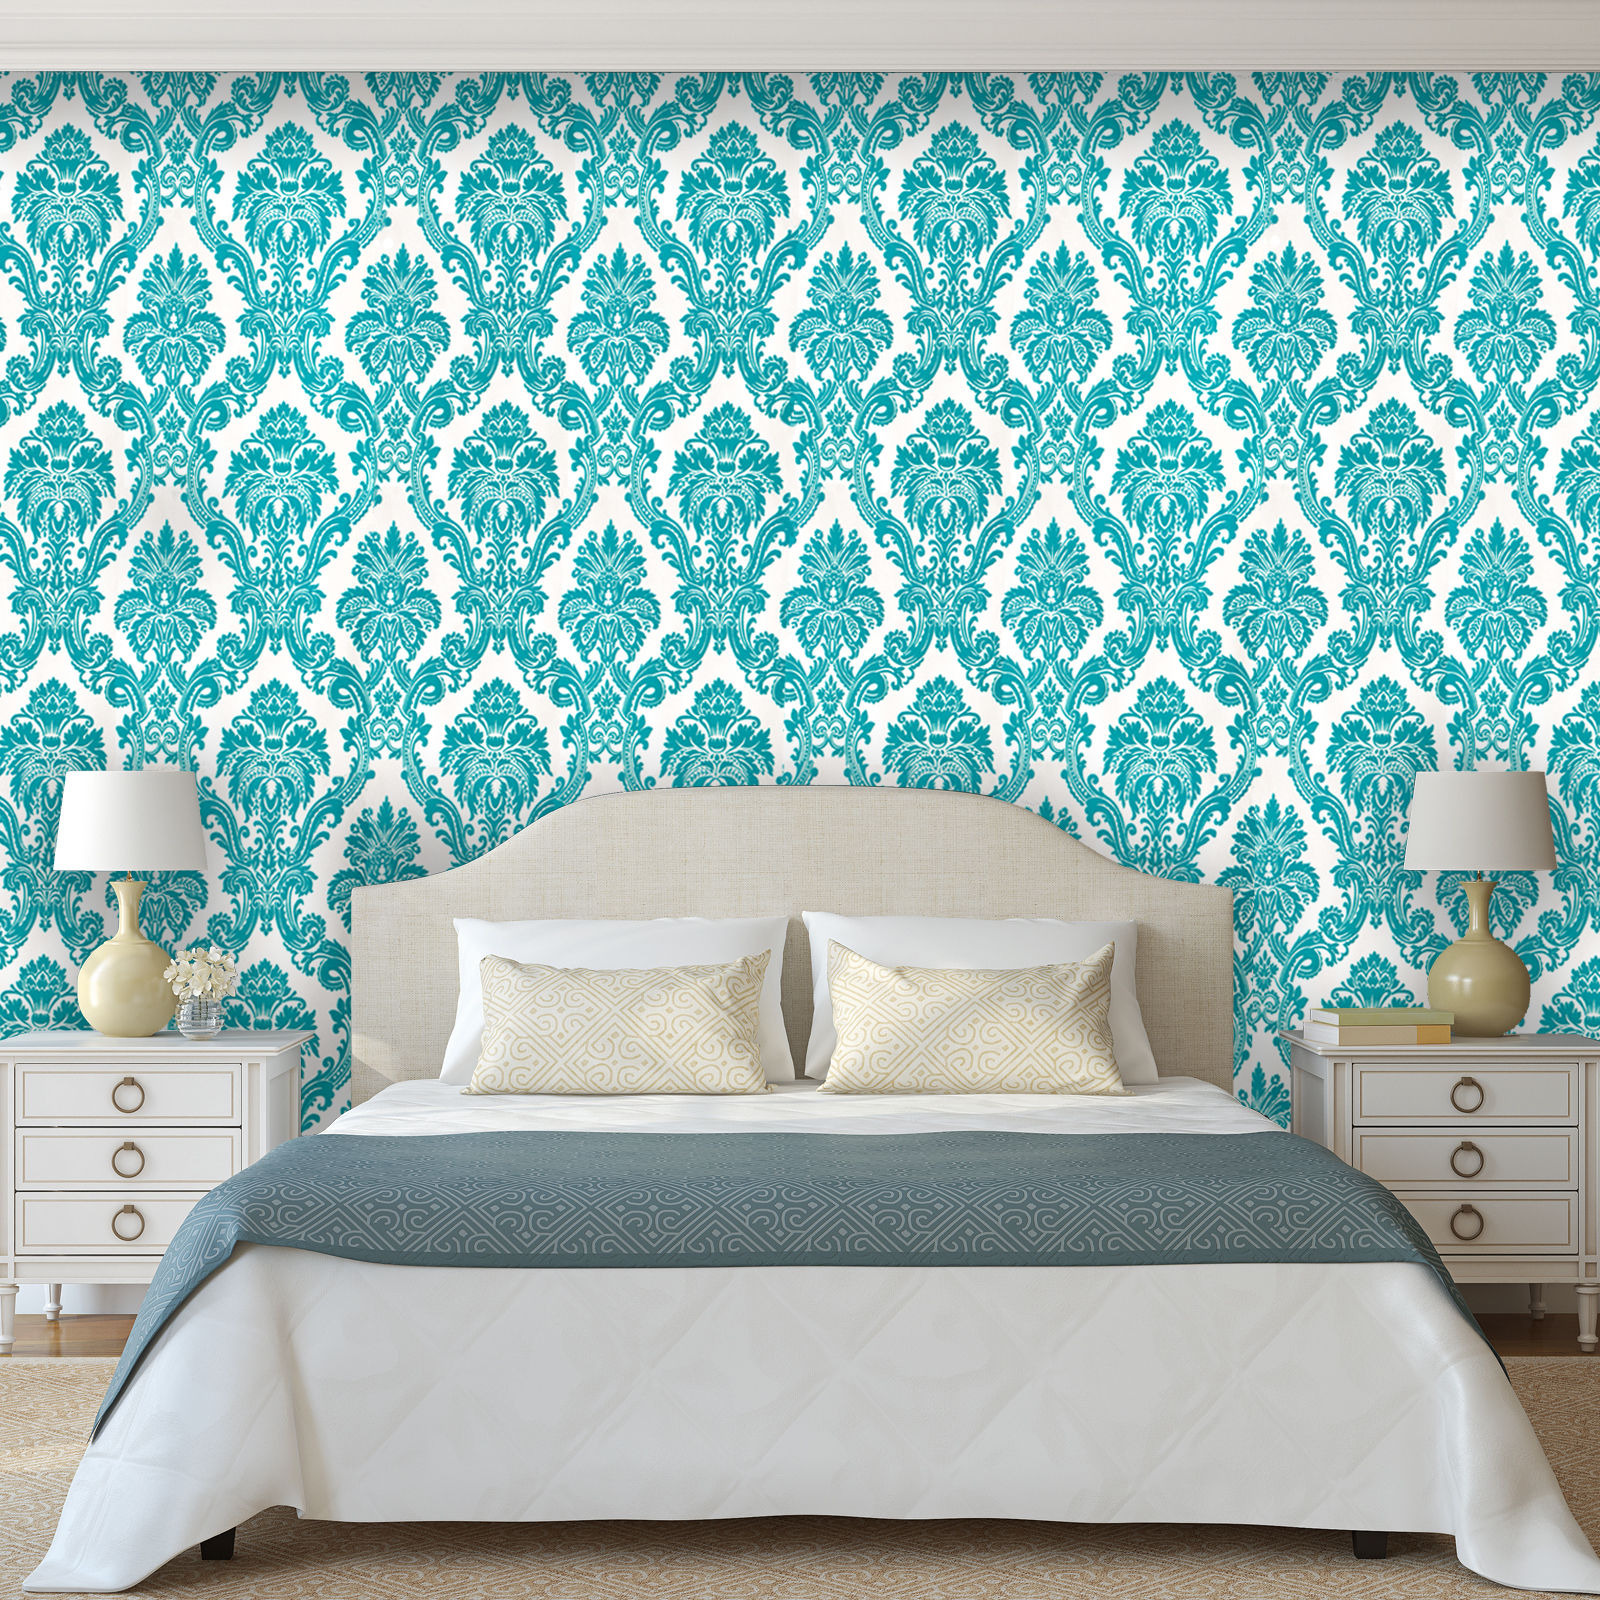 Wall Decals For Women Bedroom - HD Wallpaper 